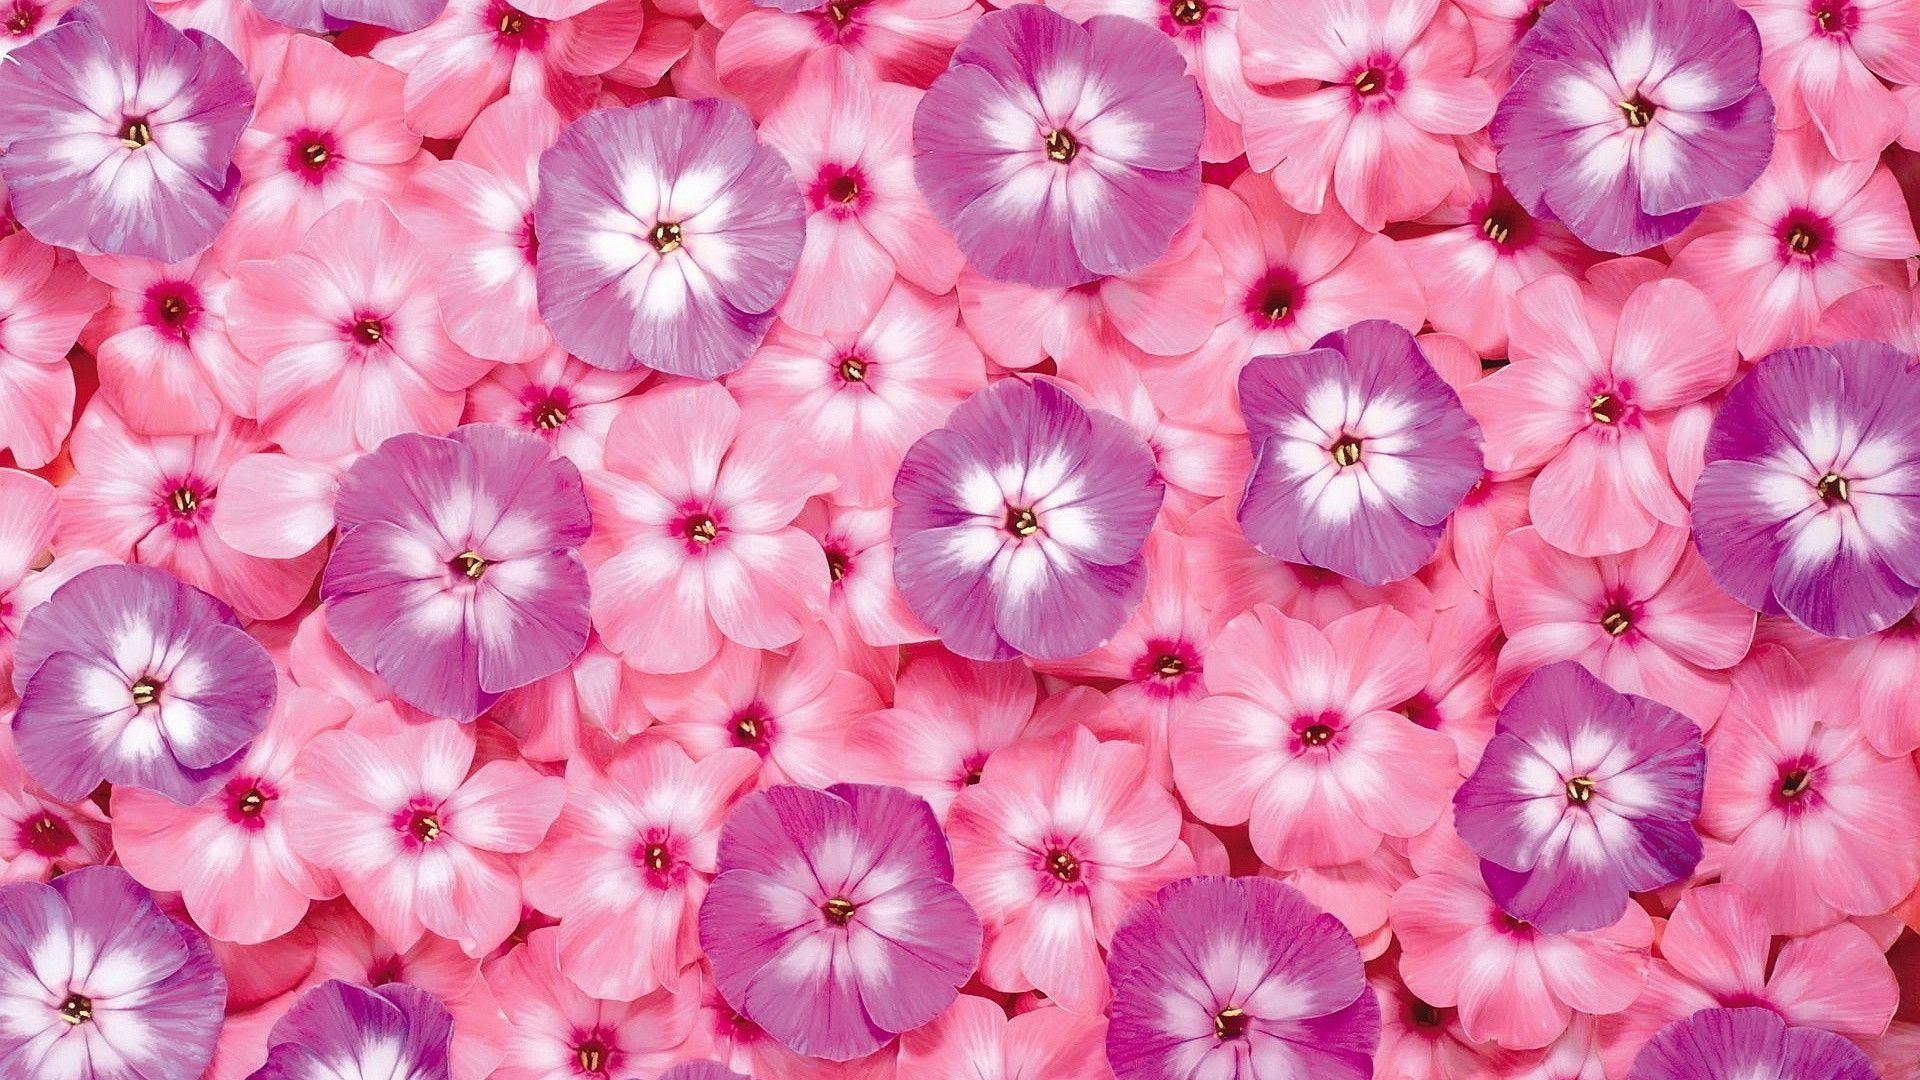 1920x1080 Pink Flower Desktop Background | Desktop Backgrounds HQ